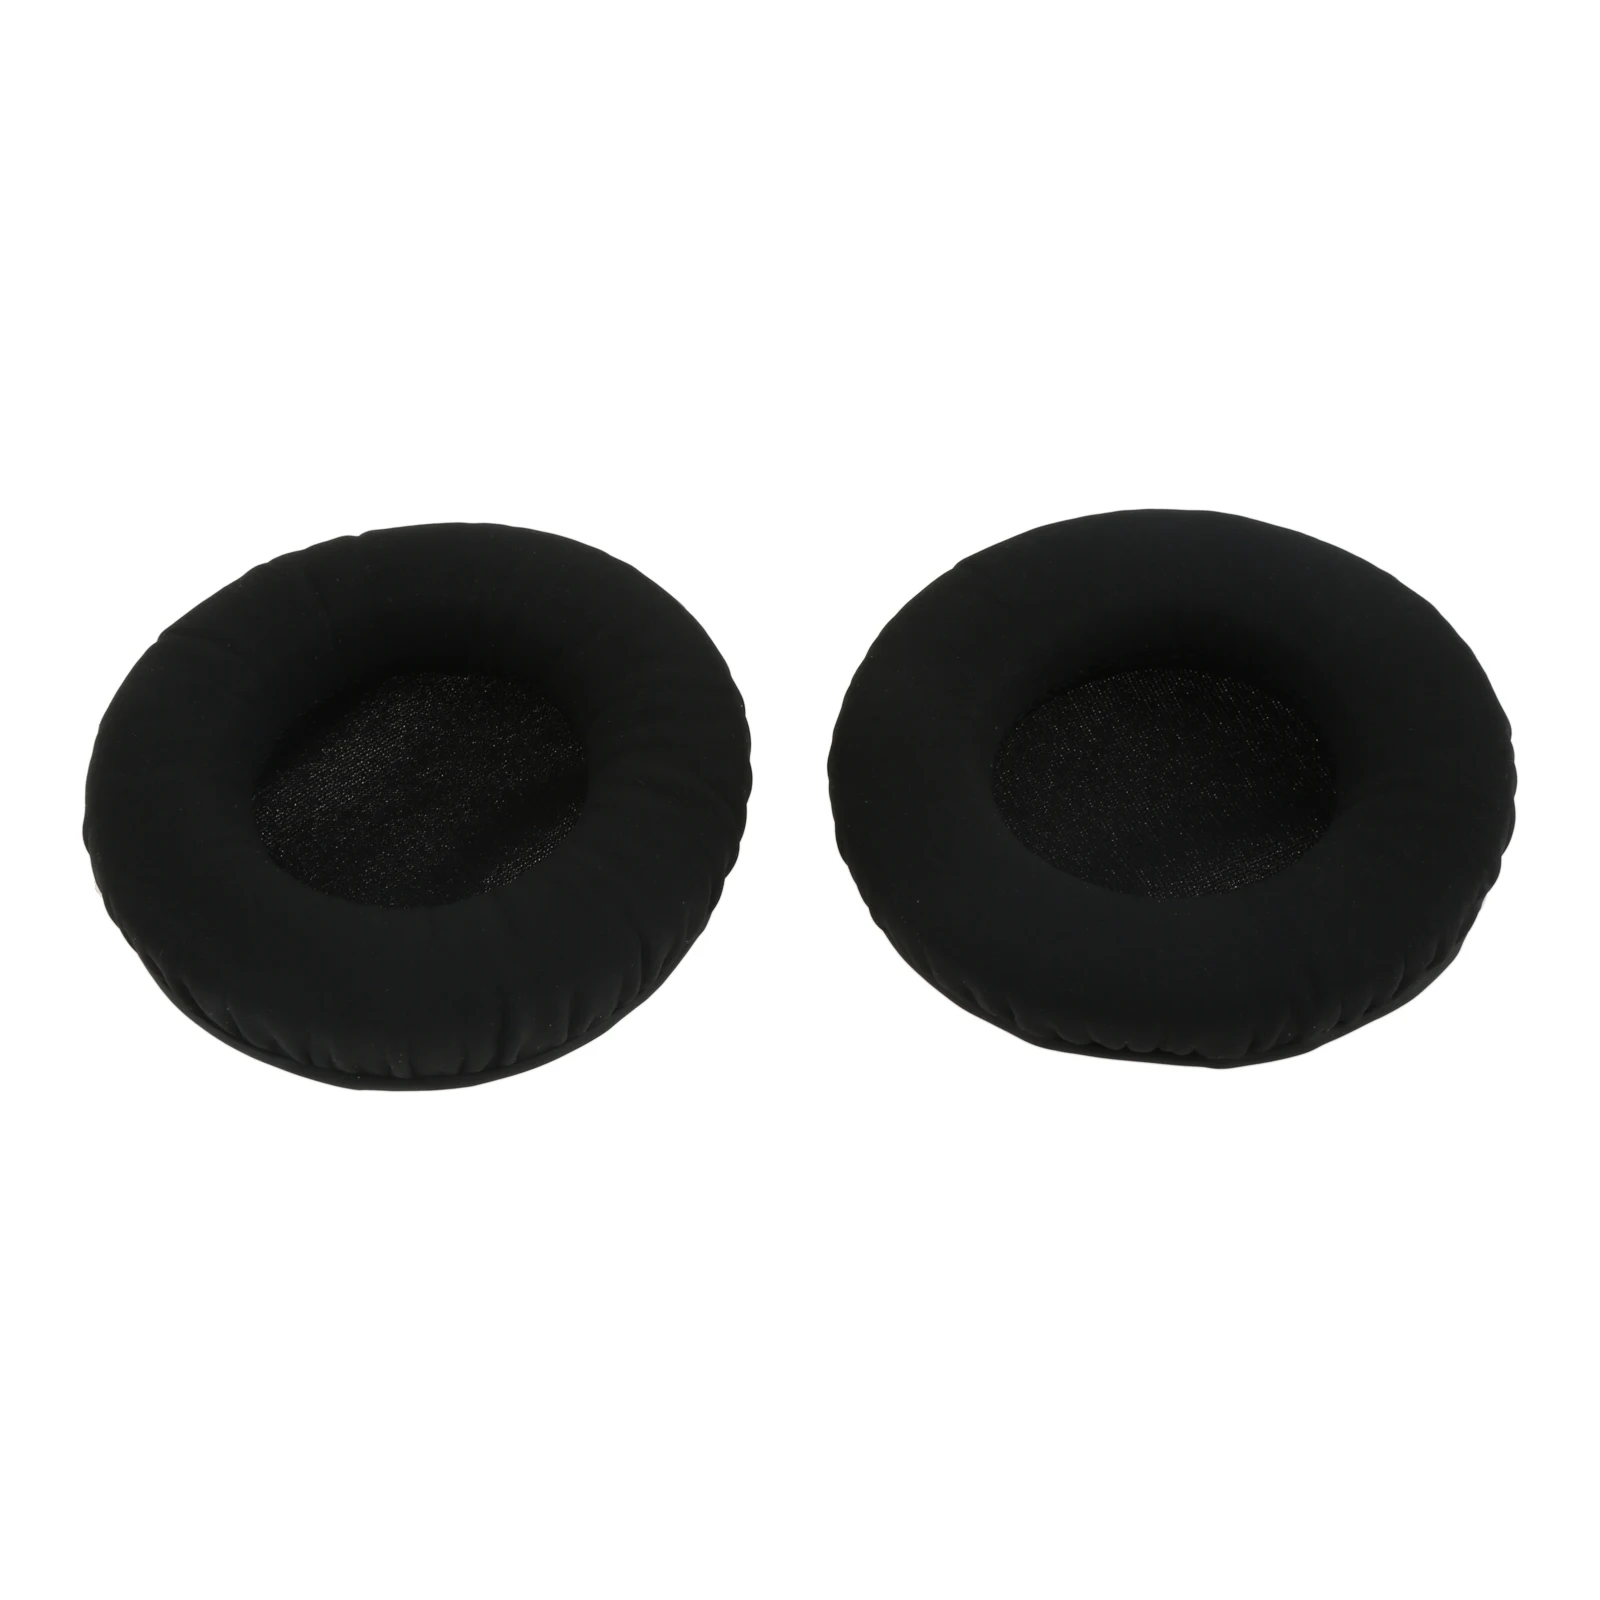 1 Pair Earpads Headphone Ear Pads for Sennheiser Urbanite XL Ear Pads Headphone Earpads Replacement Cushion Cover Repair Parts